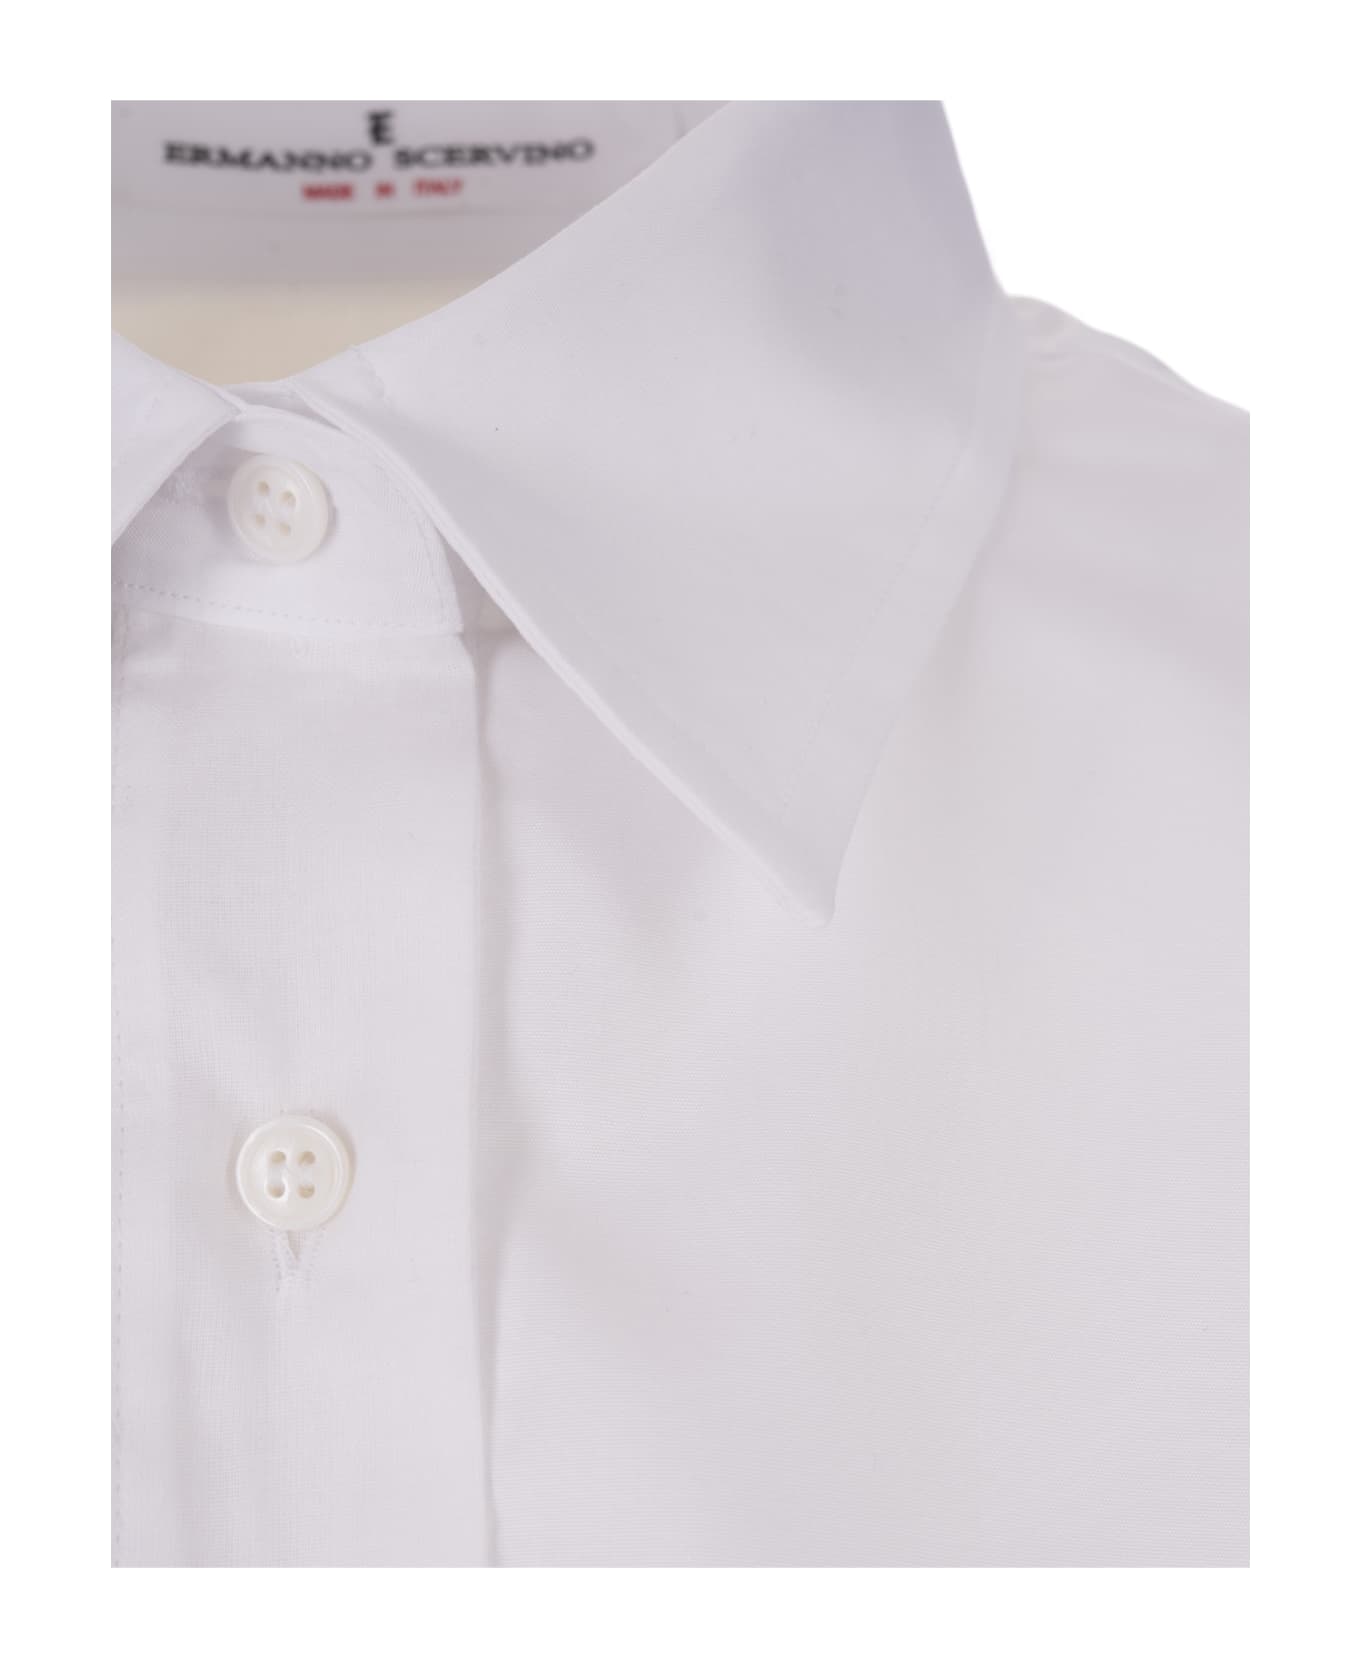 Ermanno Scervino White Oversize Shirt - White シャツ